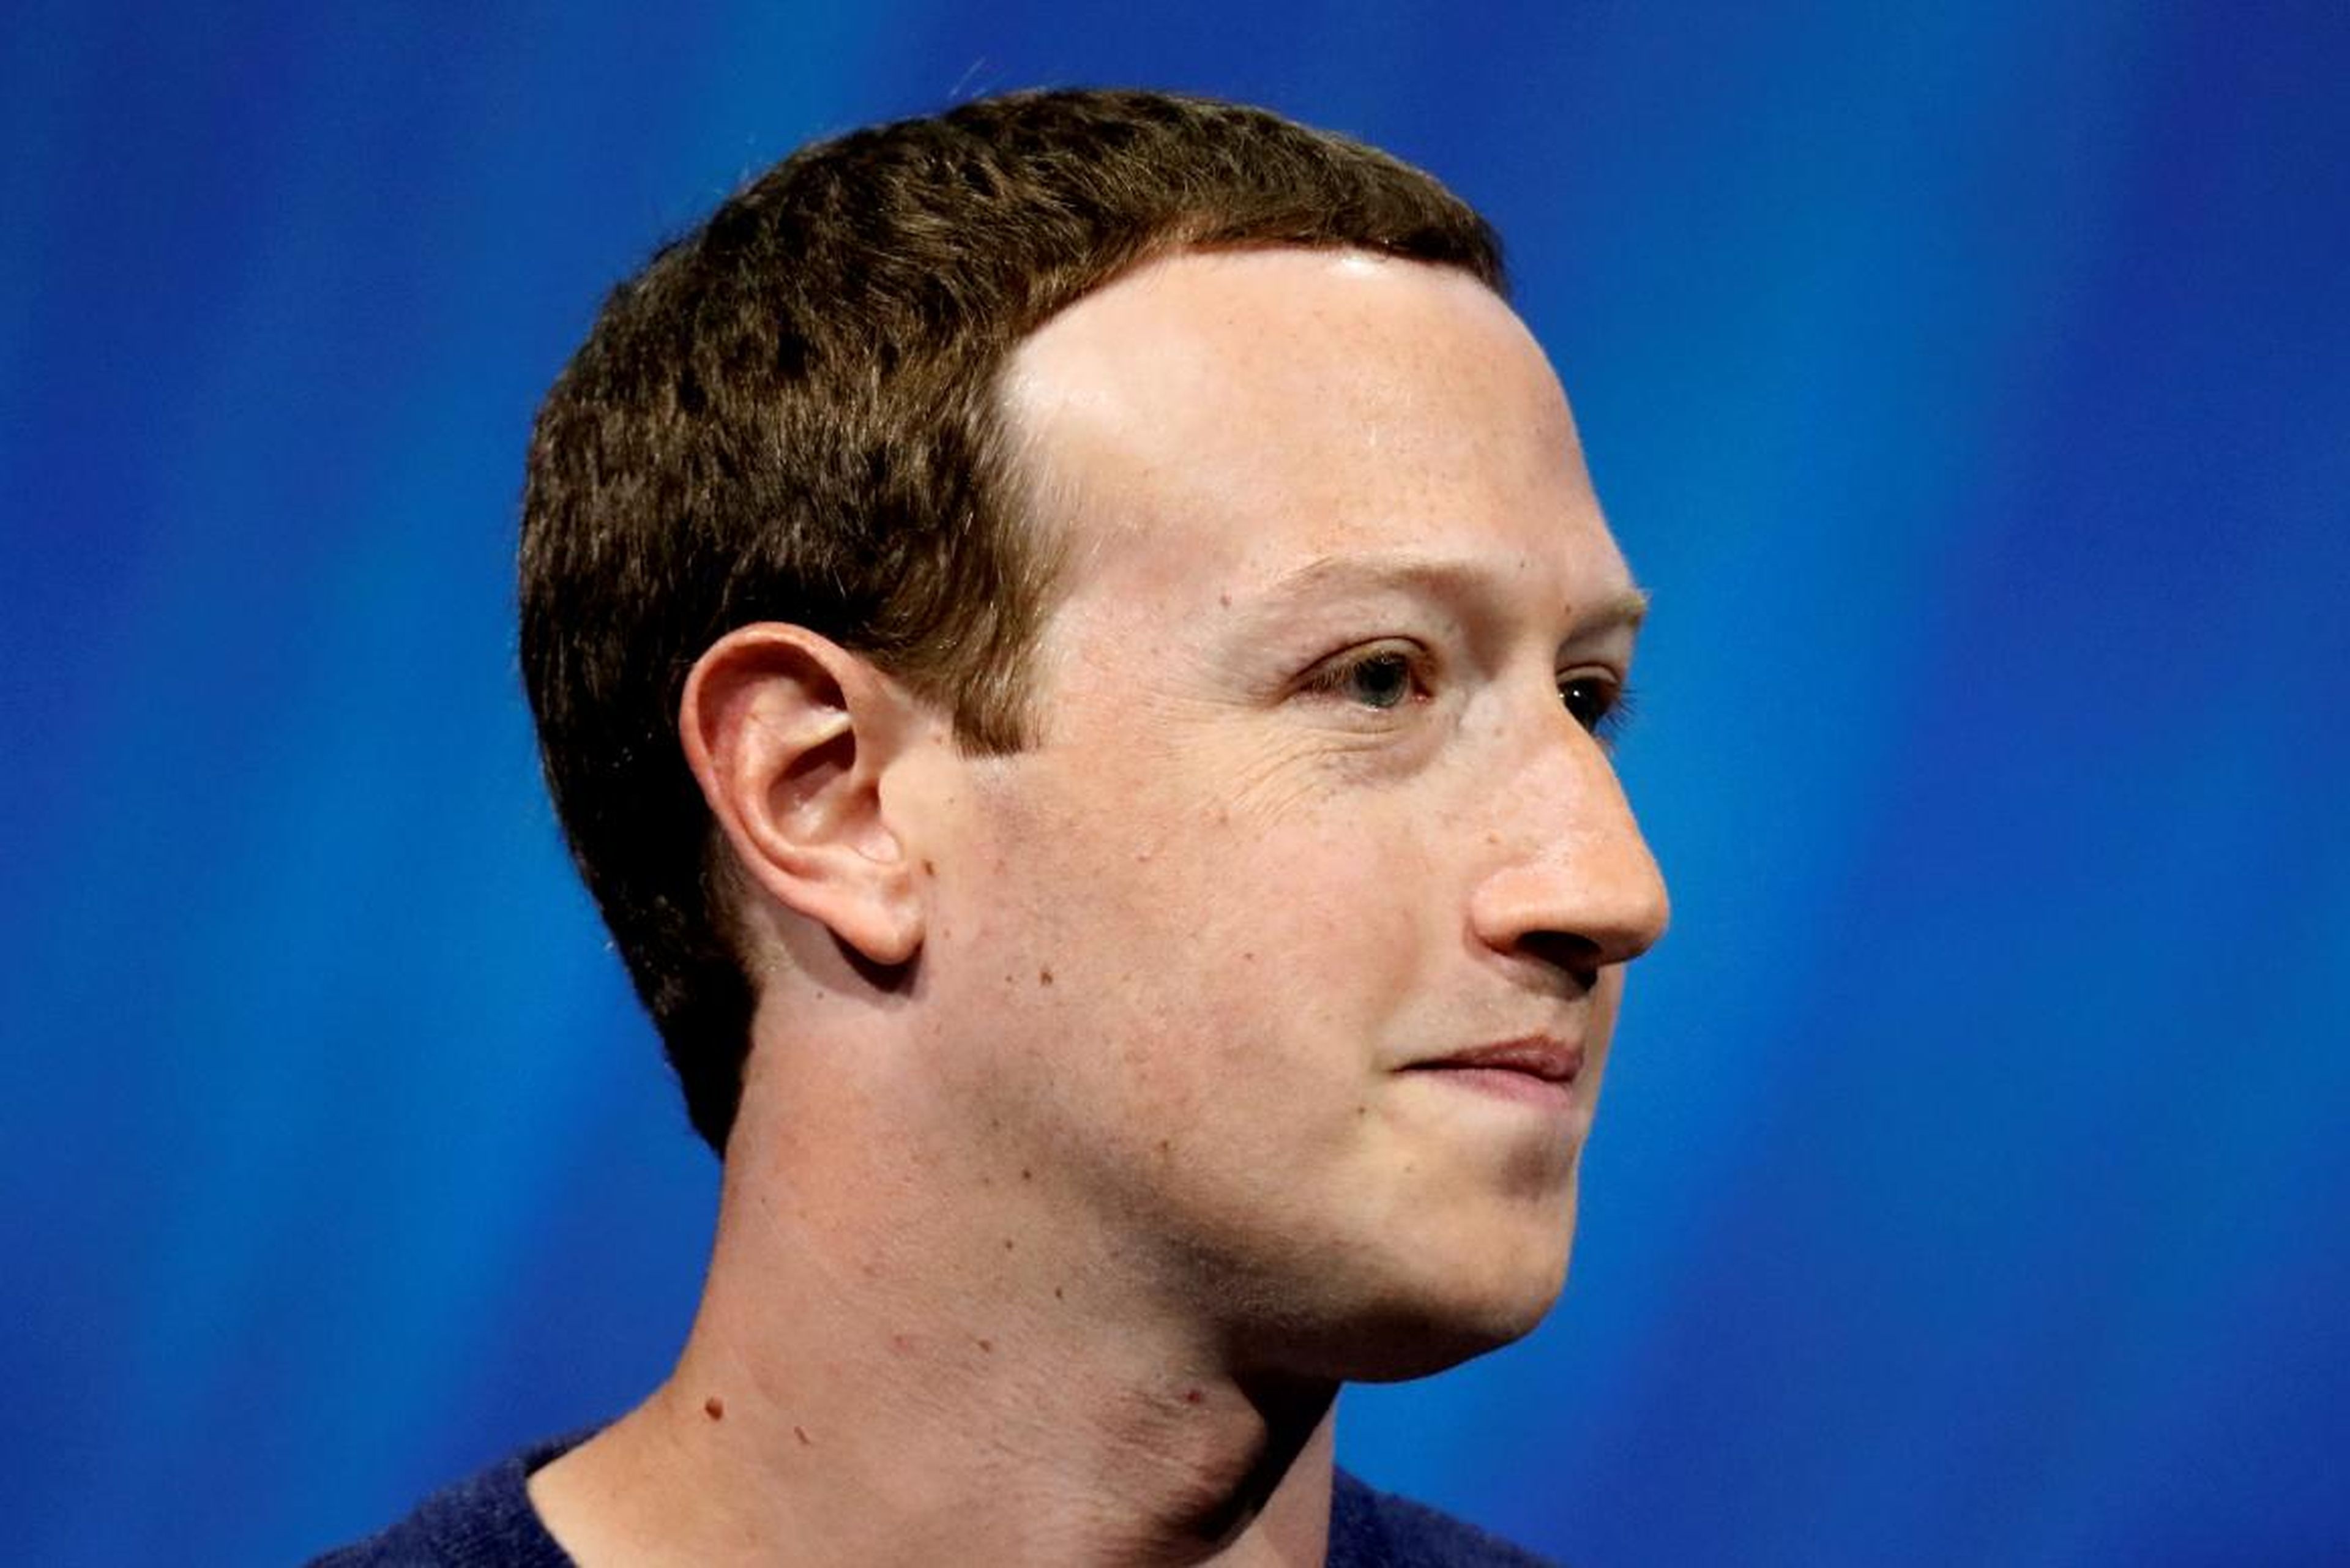 Un revisor de contenidos de Facebook murió en el trabajo, según un informe que detalla las condiciones laborales de la red social